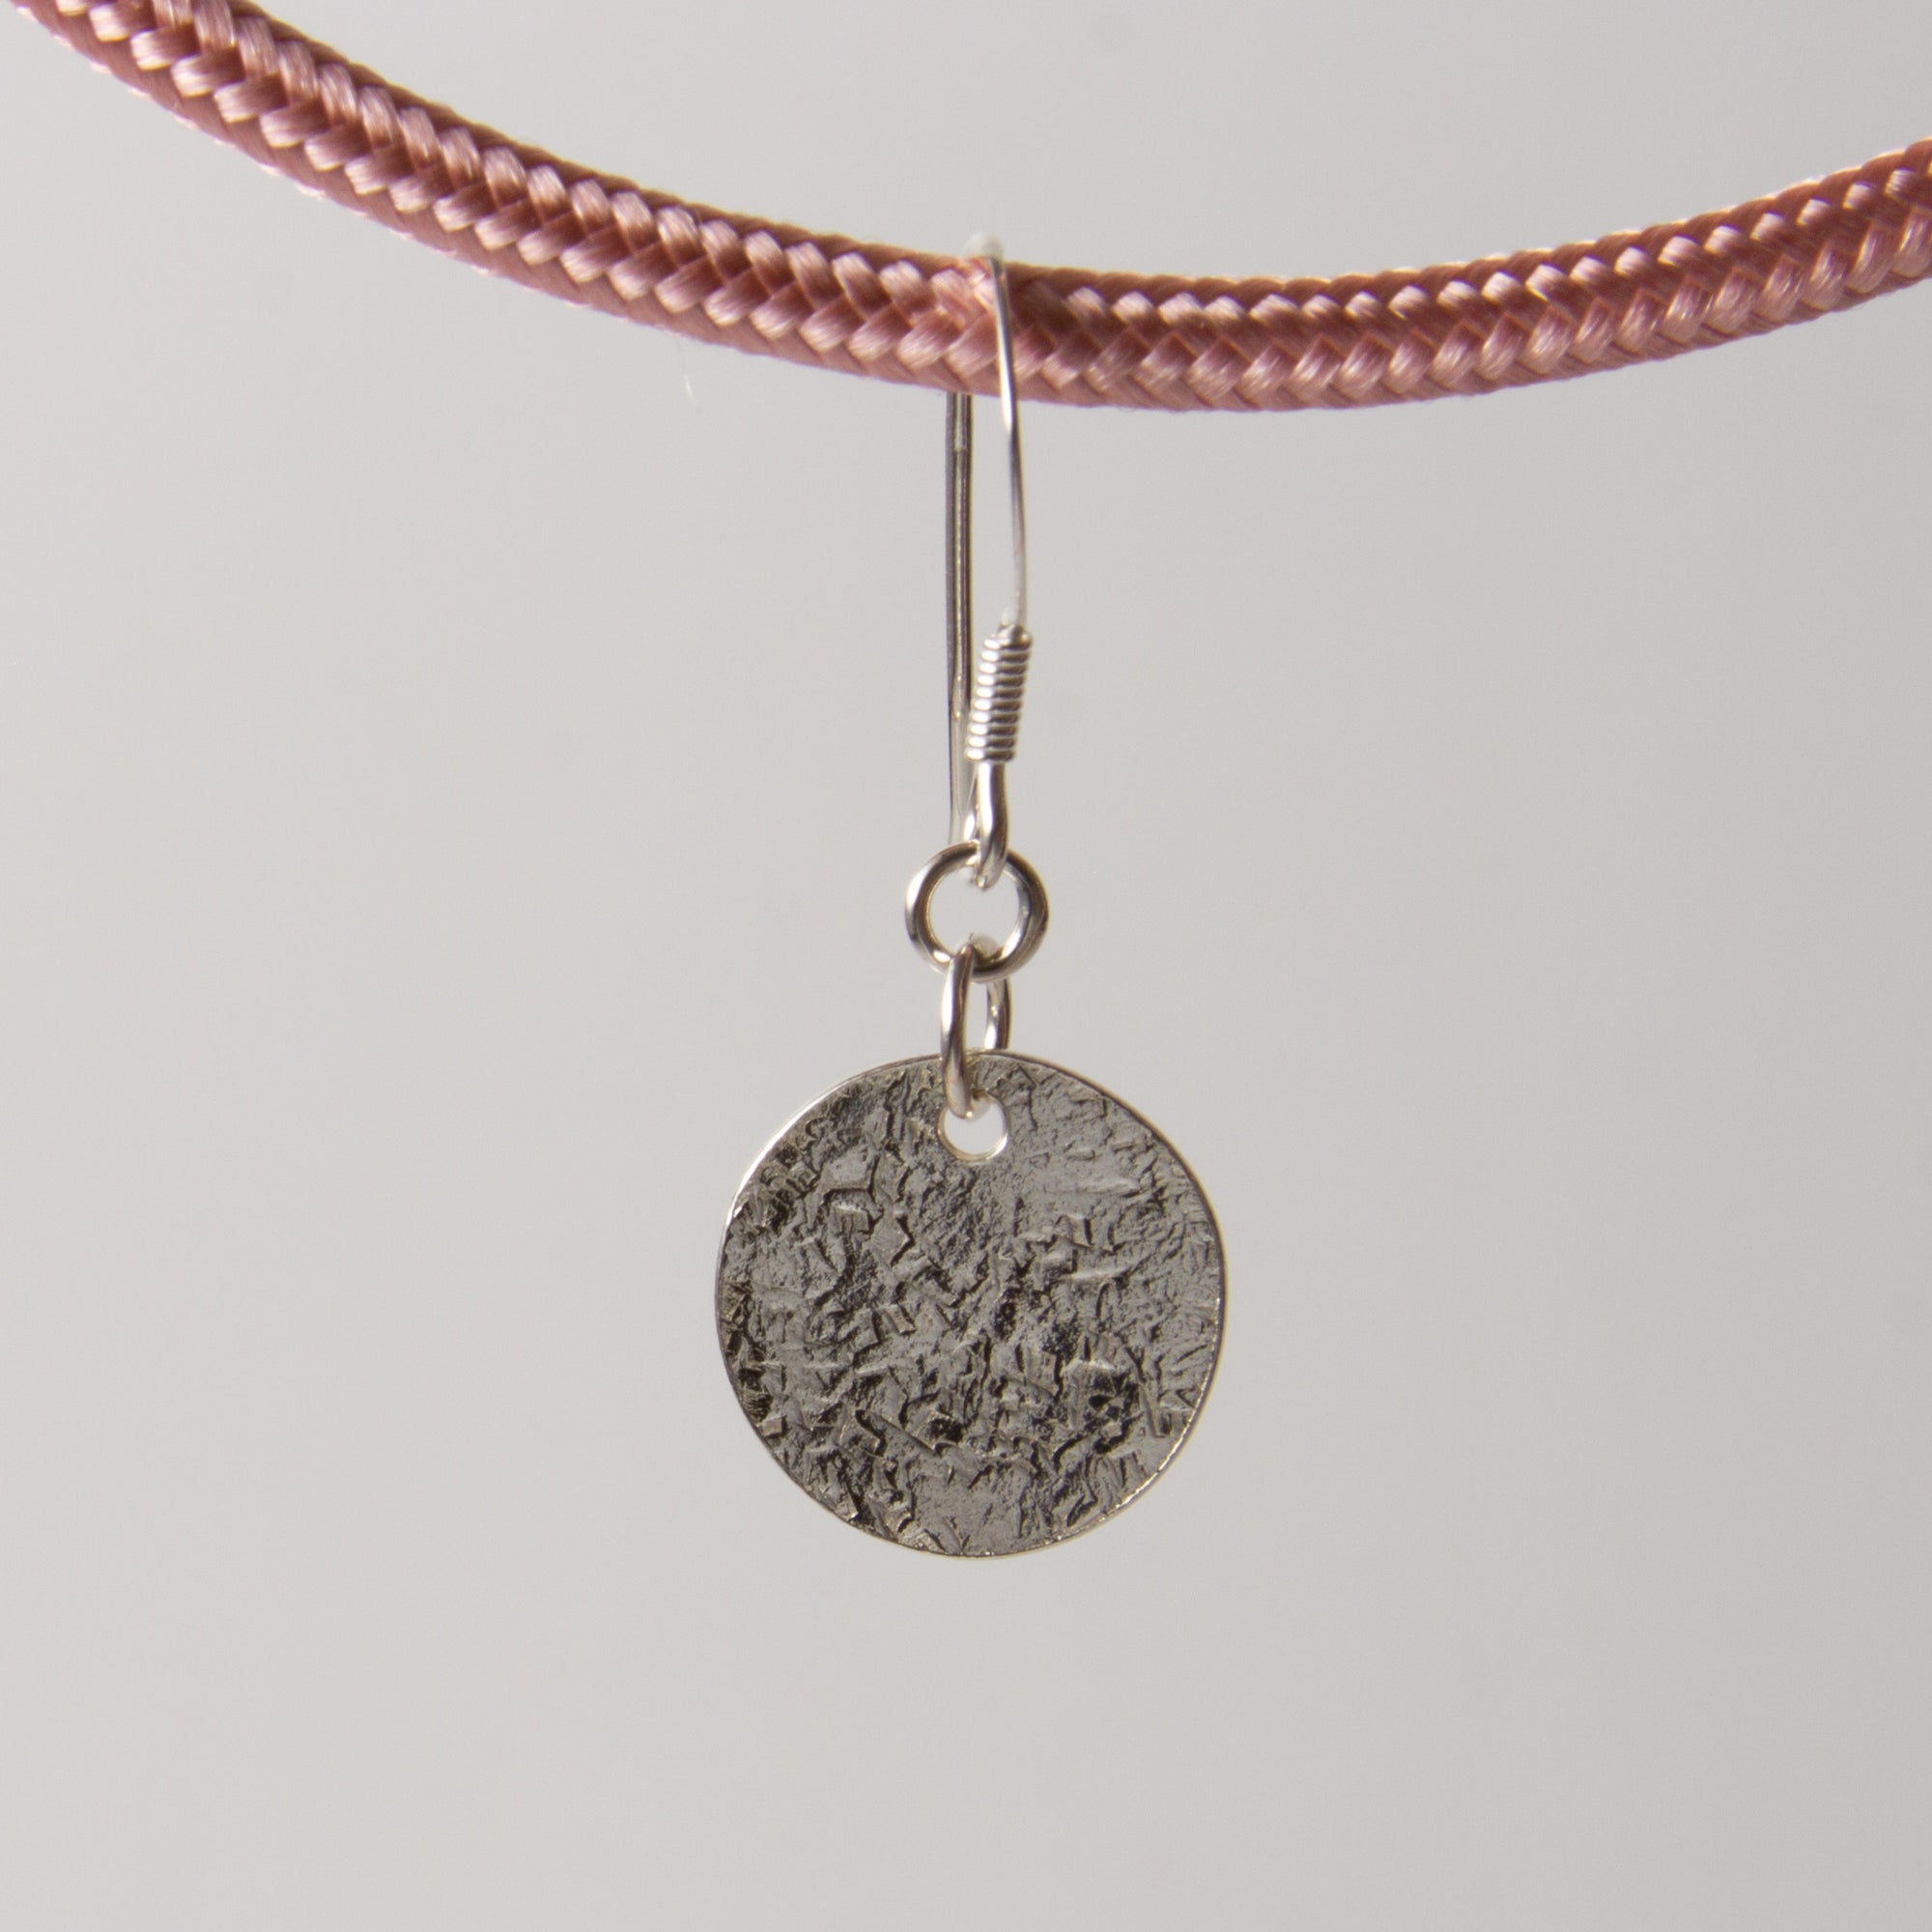 Luna seta silver drop earrings.  Silk moon textured earrings